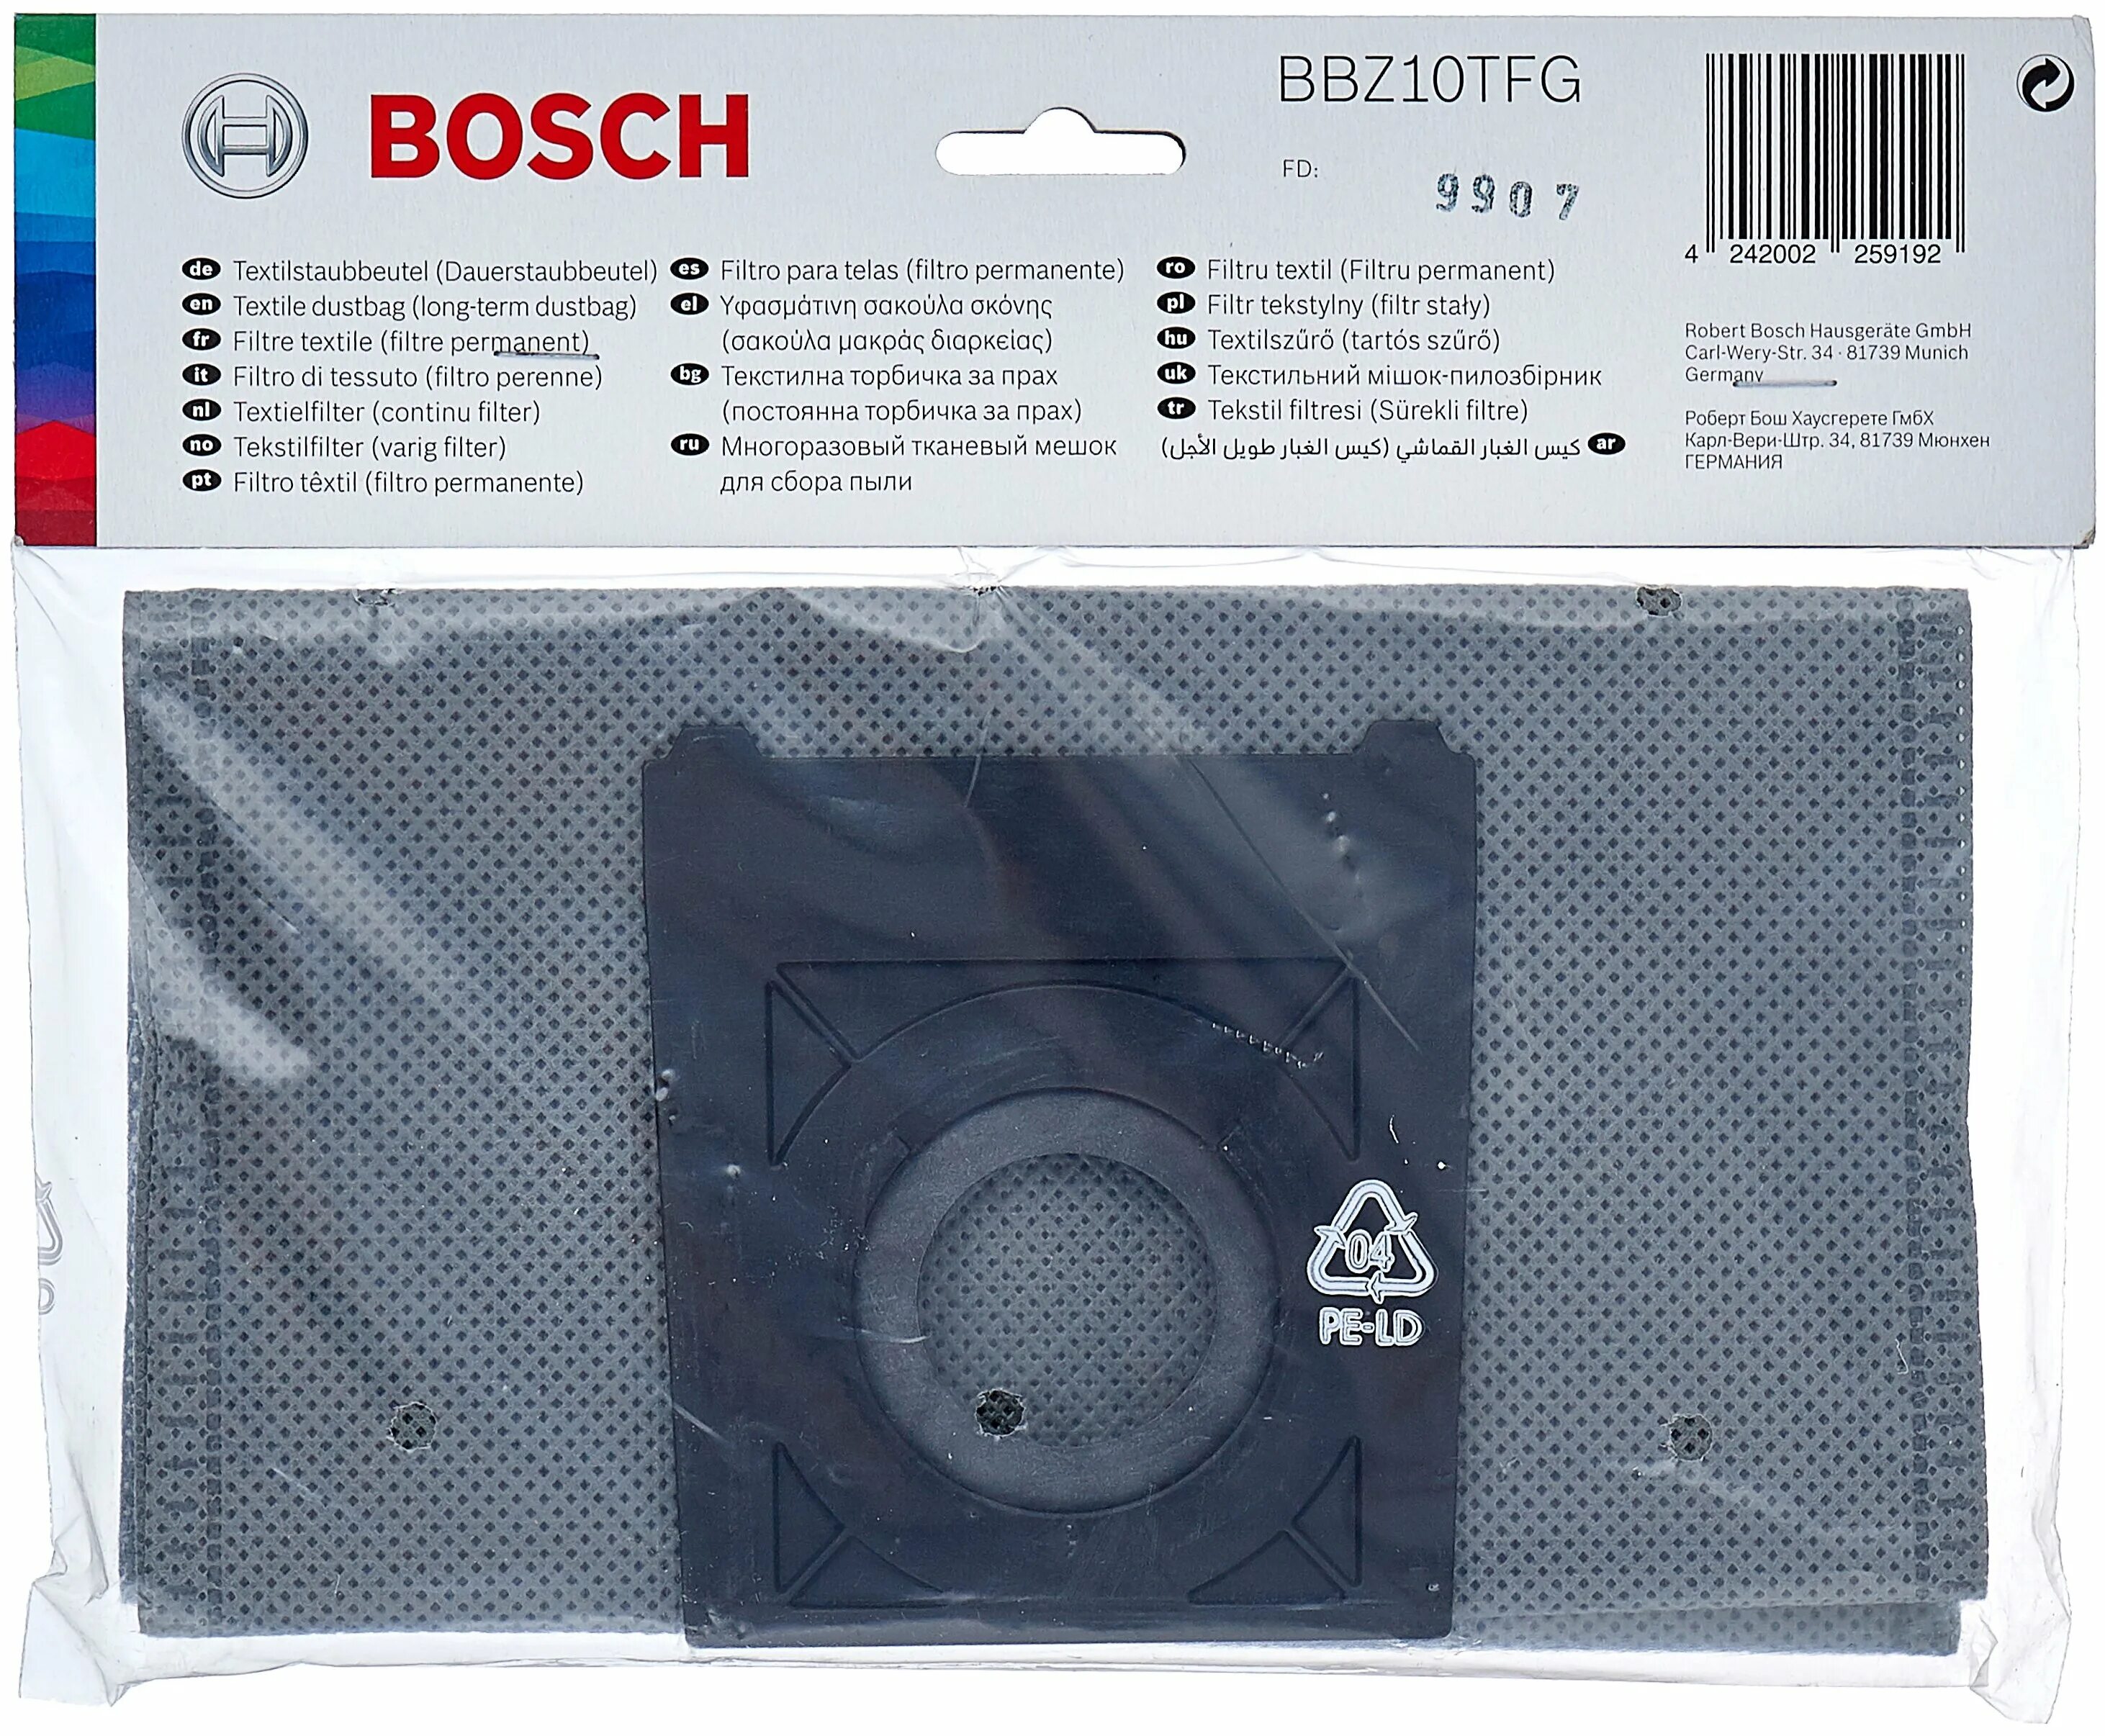 Мешок пылесборник bosch. Пылесборники Bosch bbz10tfg, 1 шт.. Bosch текстильный фильтр bbz10tfw. Многоразовый мешок Bosch. Пылесборник Bosch gcm10sd.